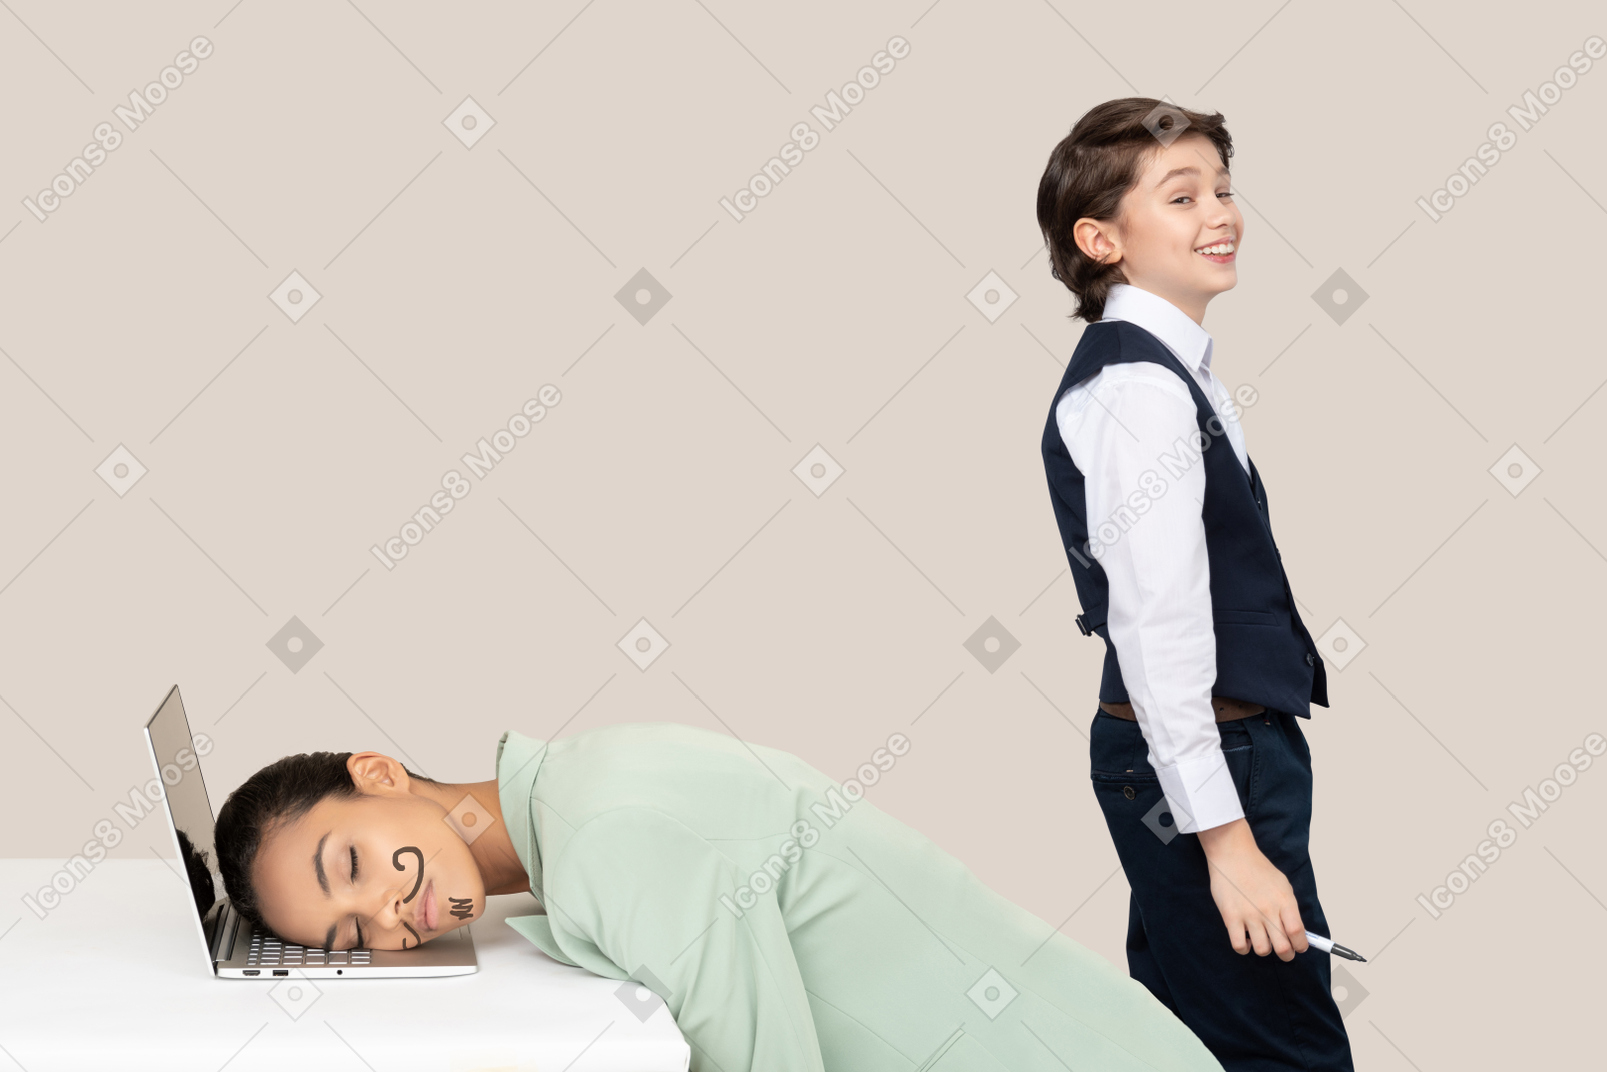 Непослушный мальчик смеется над своим учителем, который спит с усами на лице